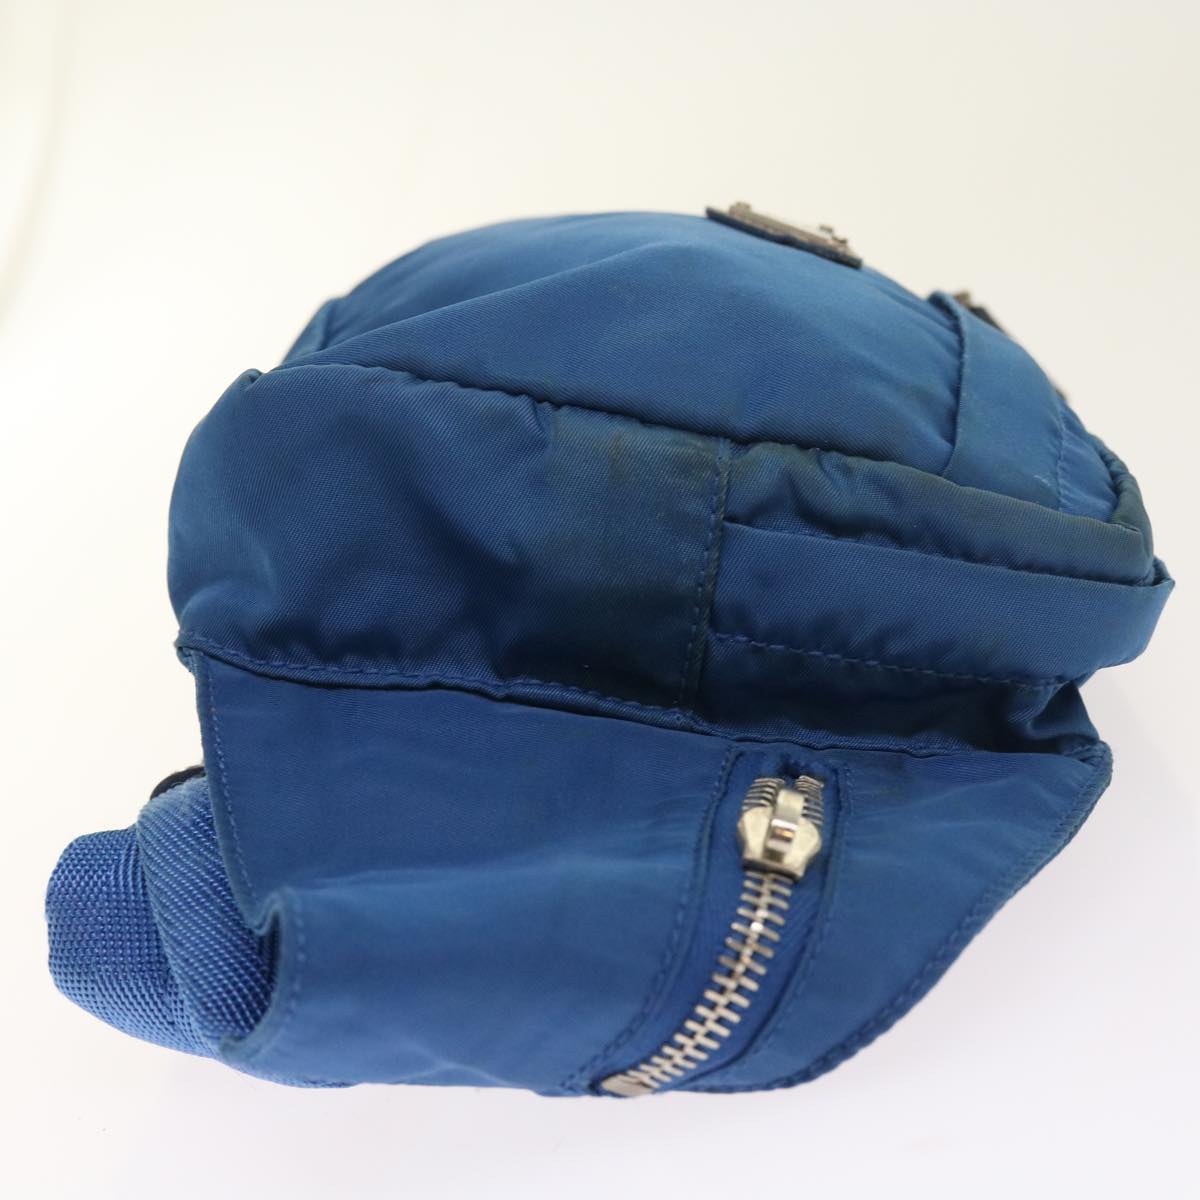 PRADA Waist bag Nylon Light Blue Auth 56455